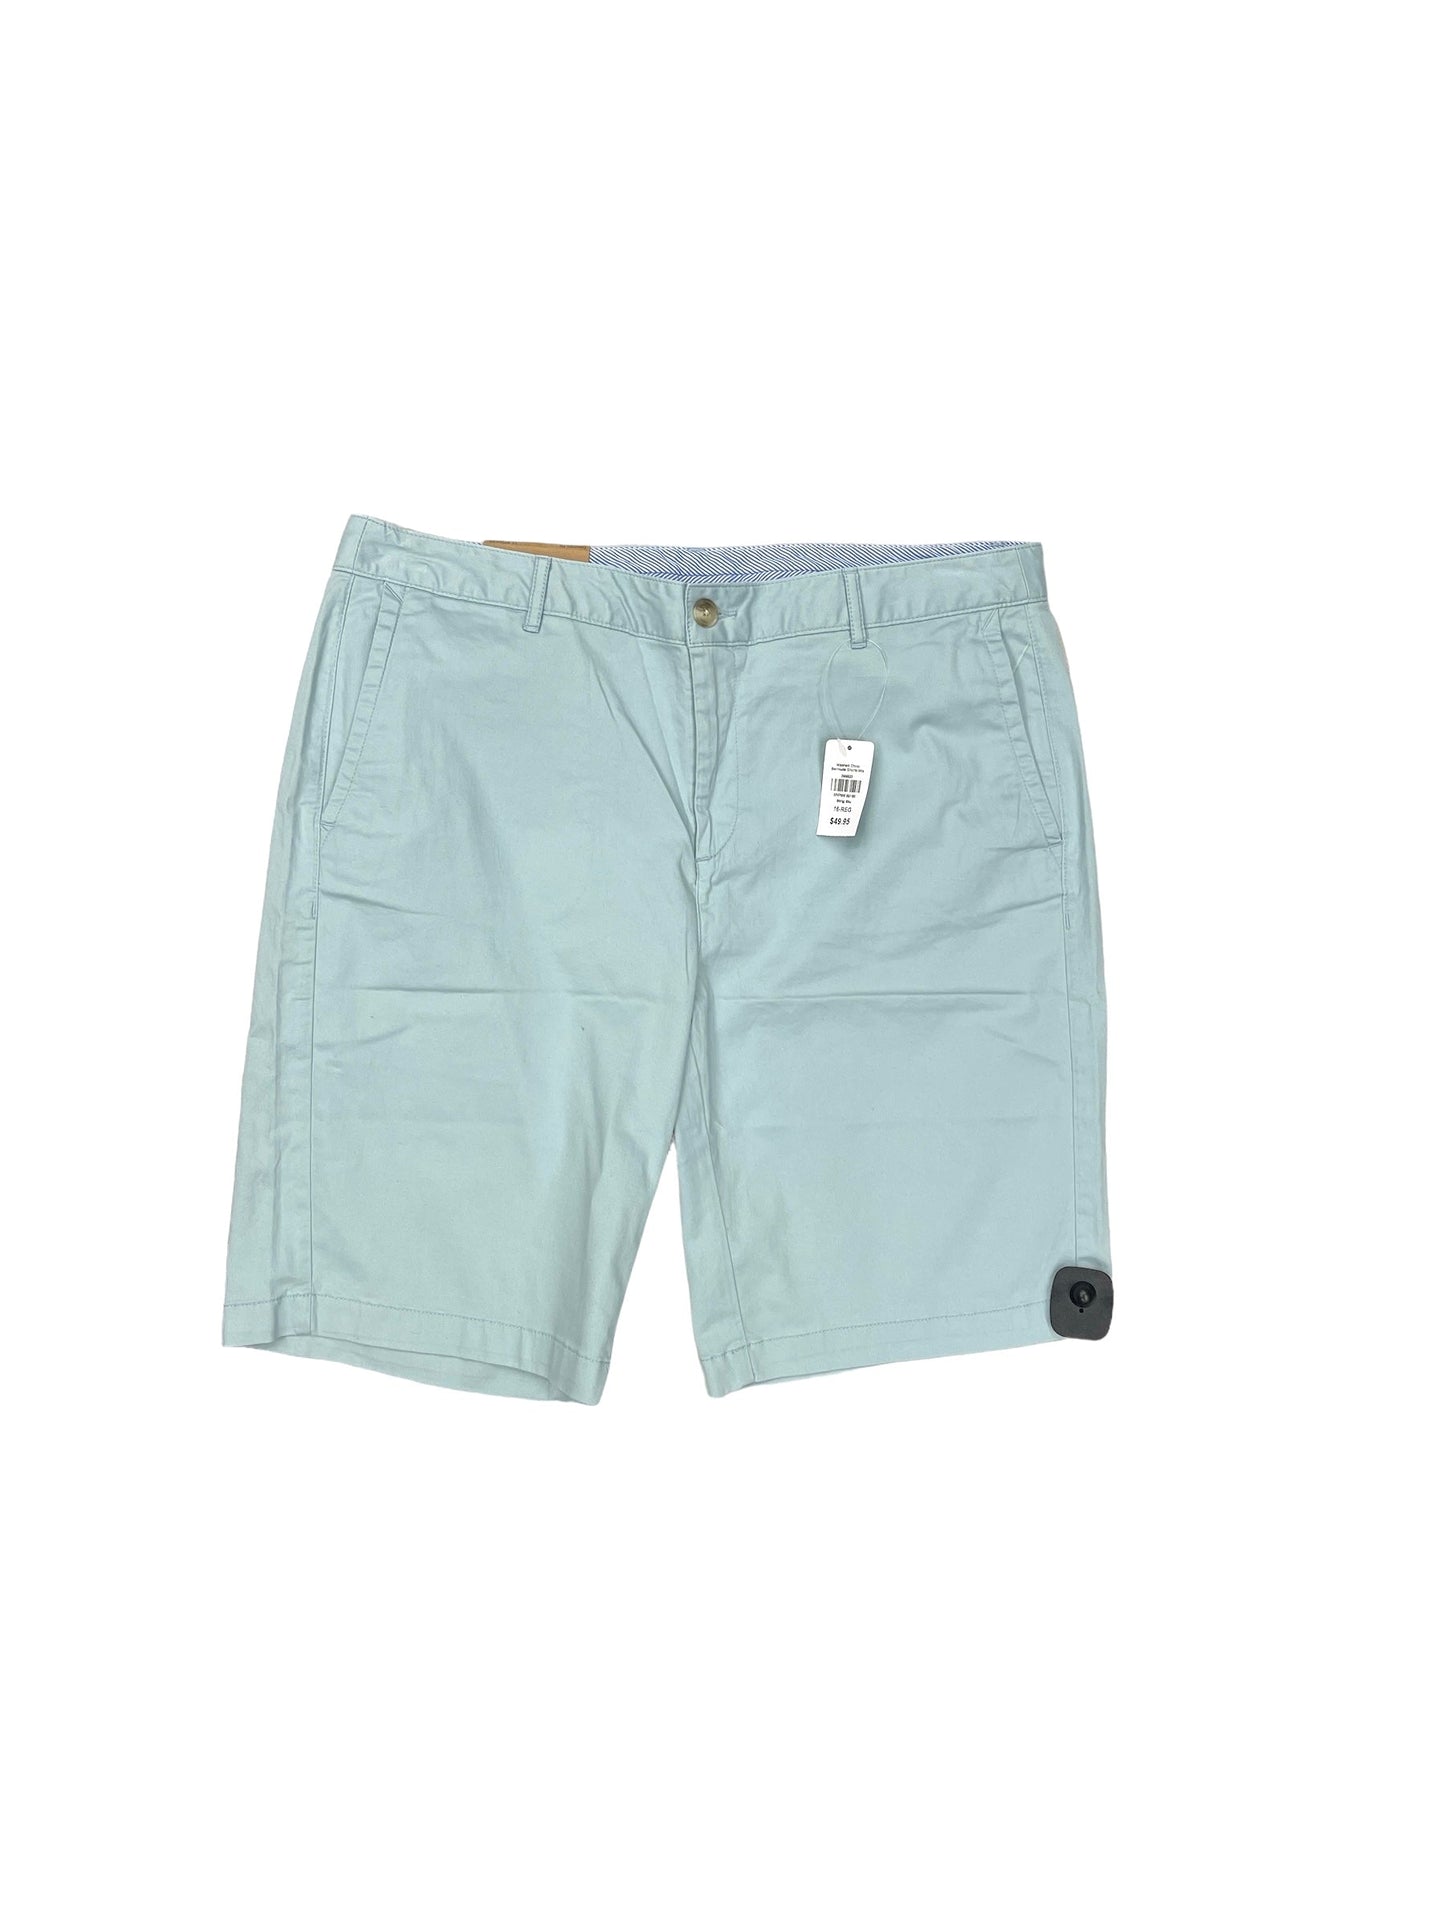 Aqua Shorts L.l. Bean, Size 16